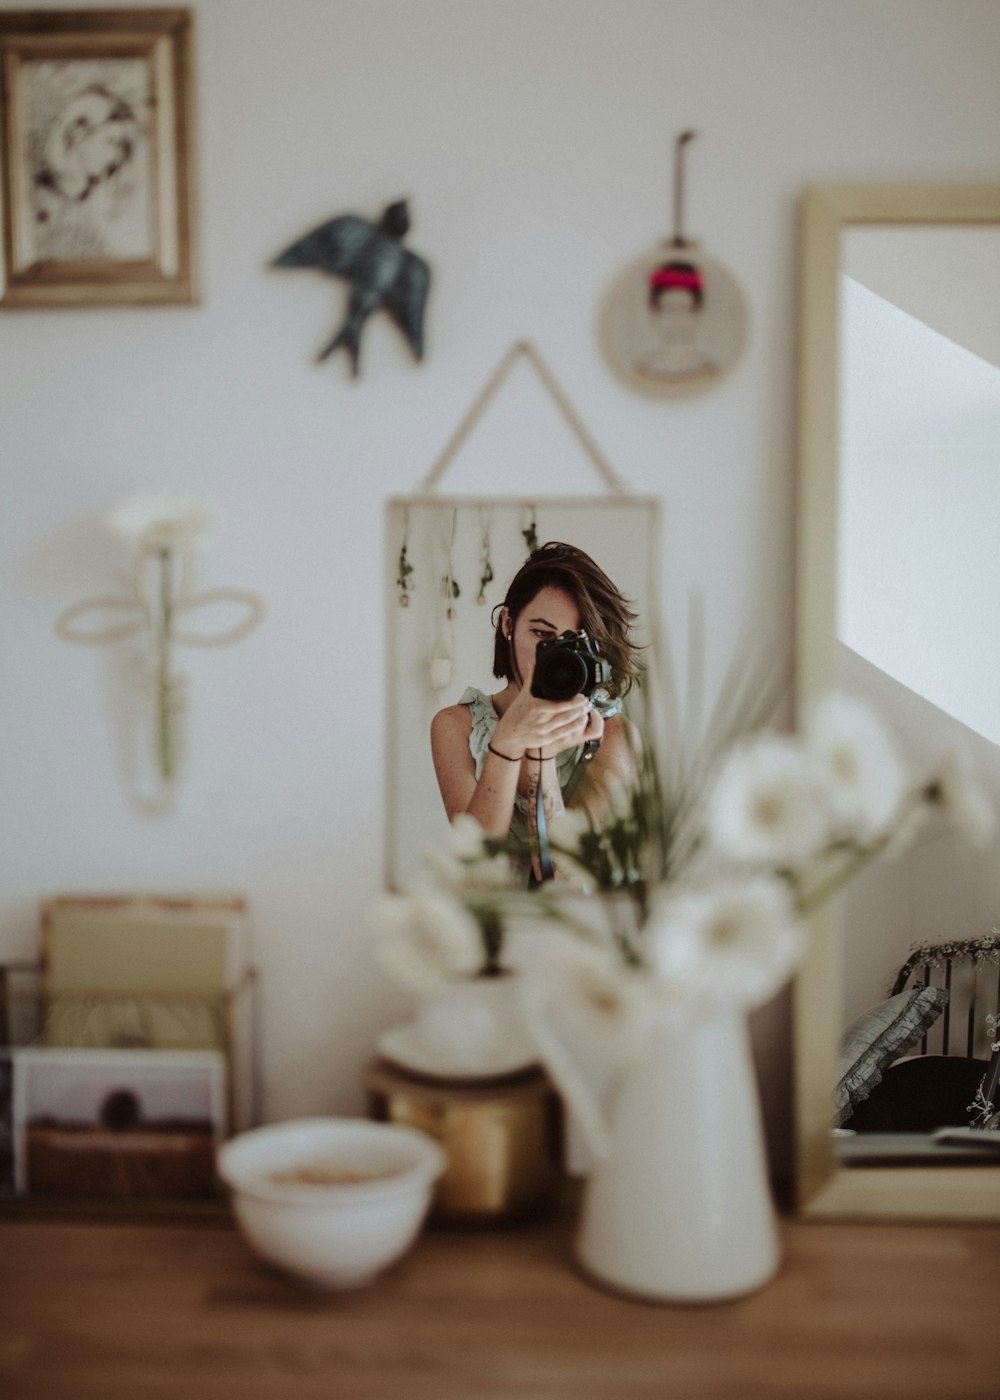 mujer sosteniendo una cámara DSLR tomando una foto en el espejo frontal dentro de la habitación